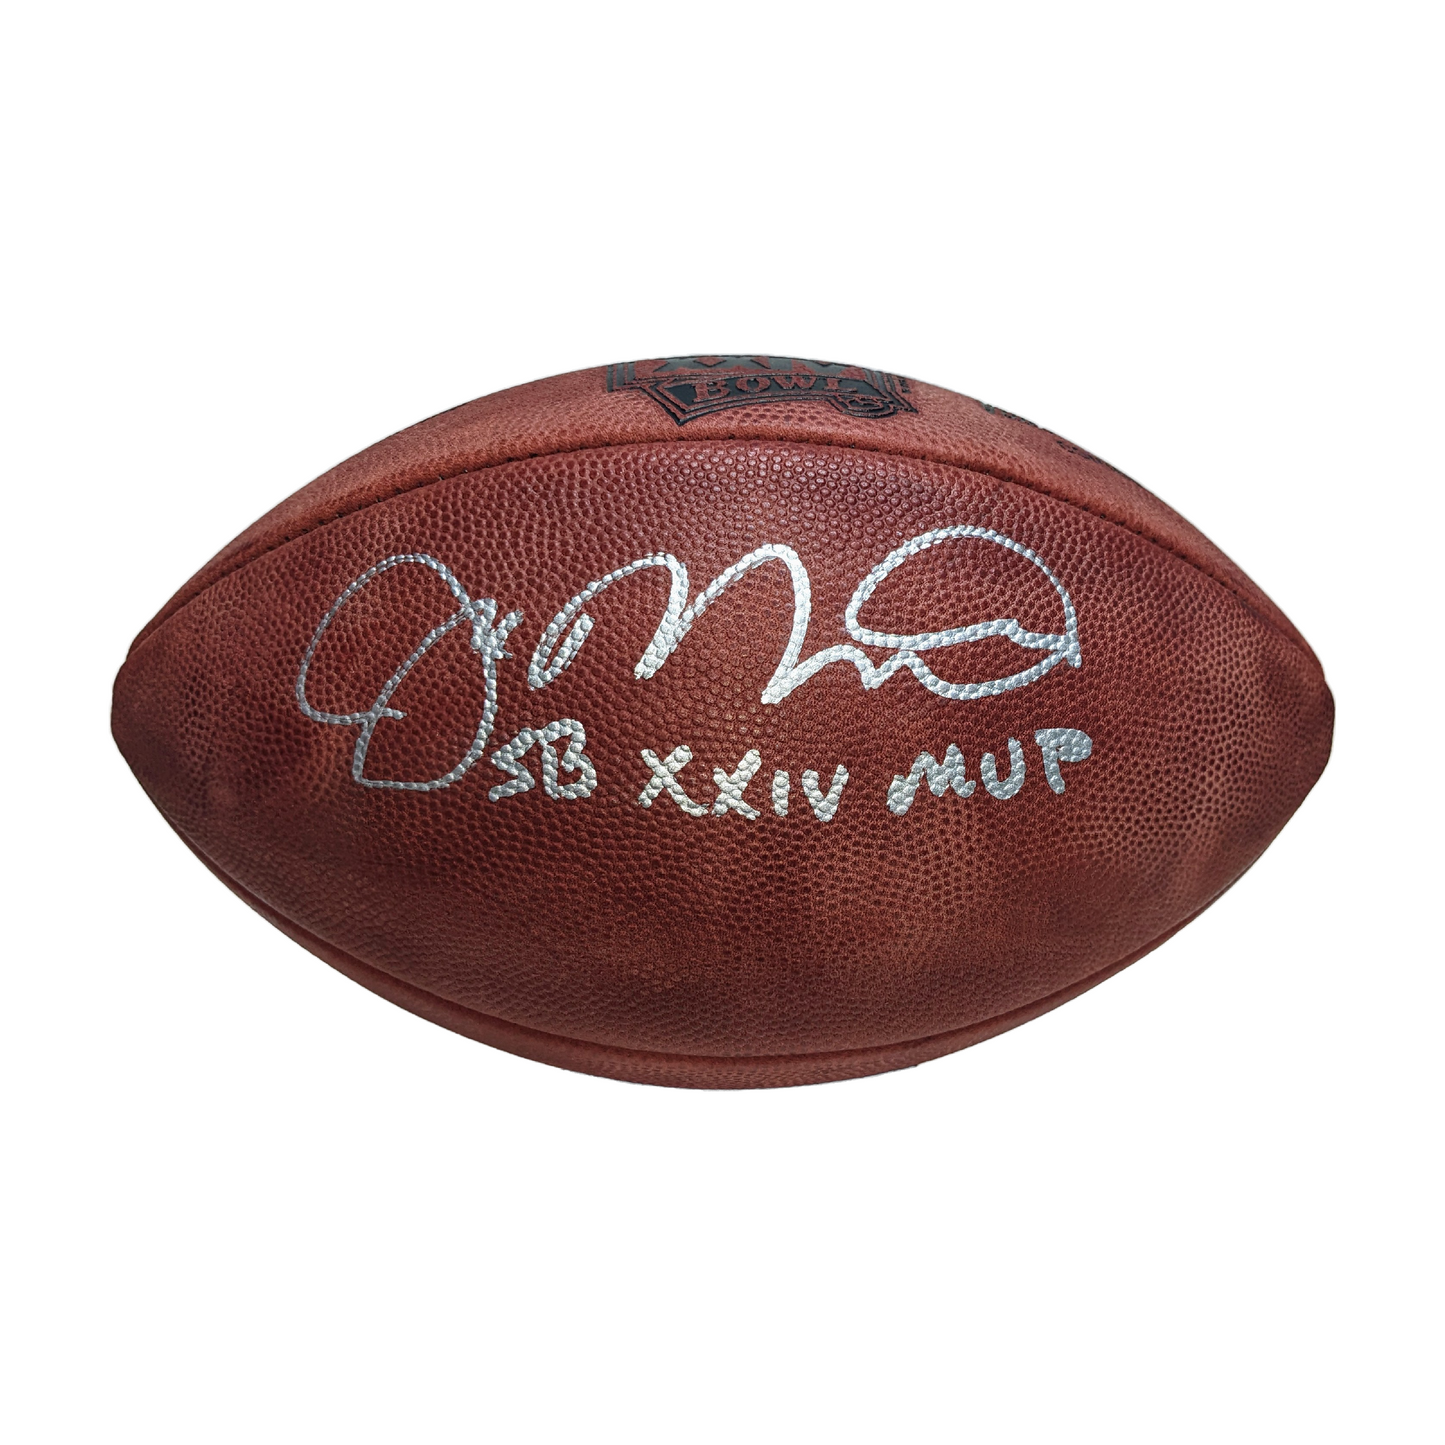 Joe Montana Autographed F1007 Super Bowl 24 Football with MVP -PSA